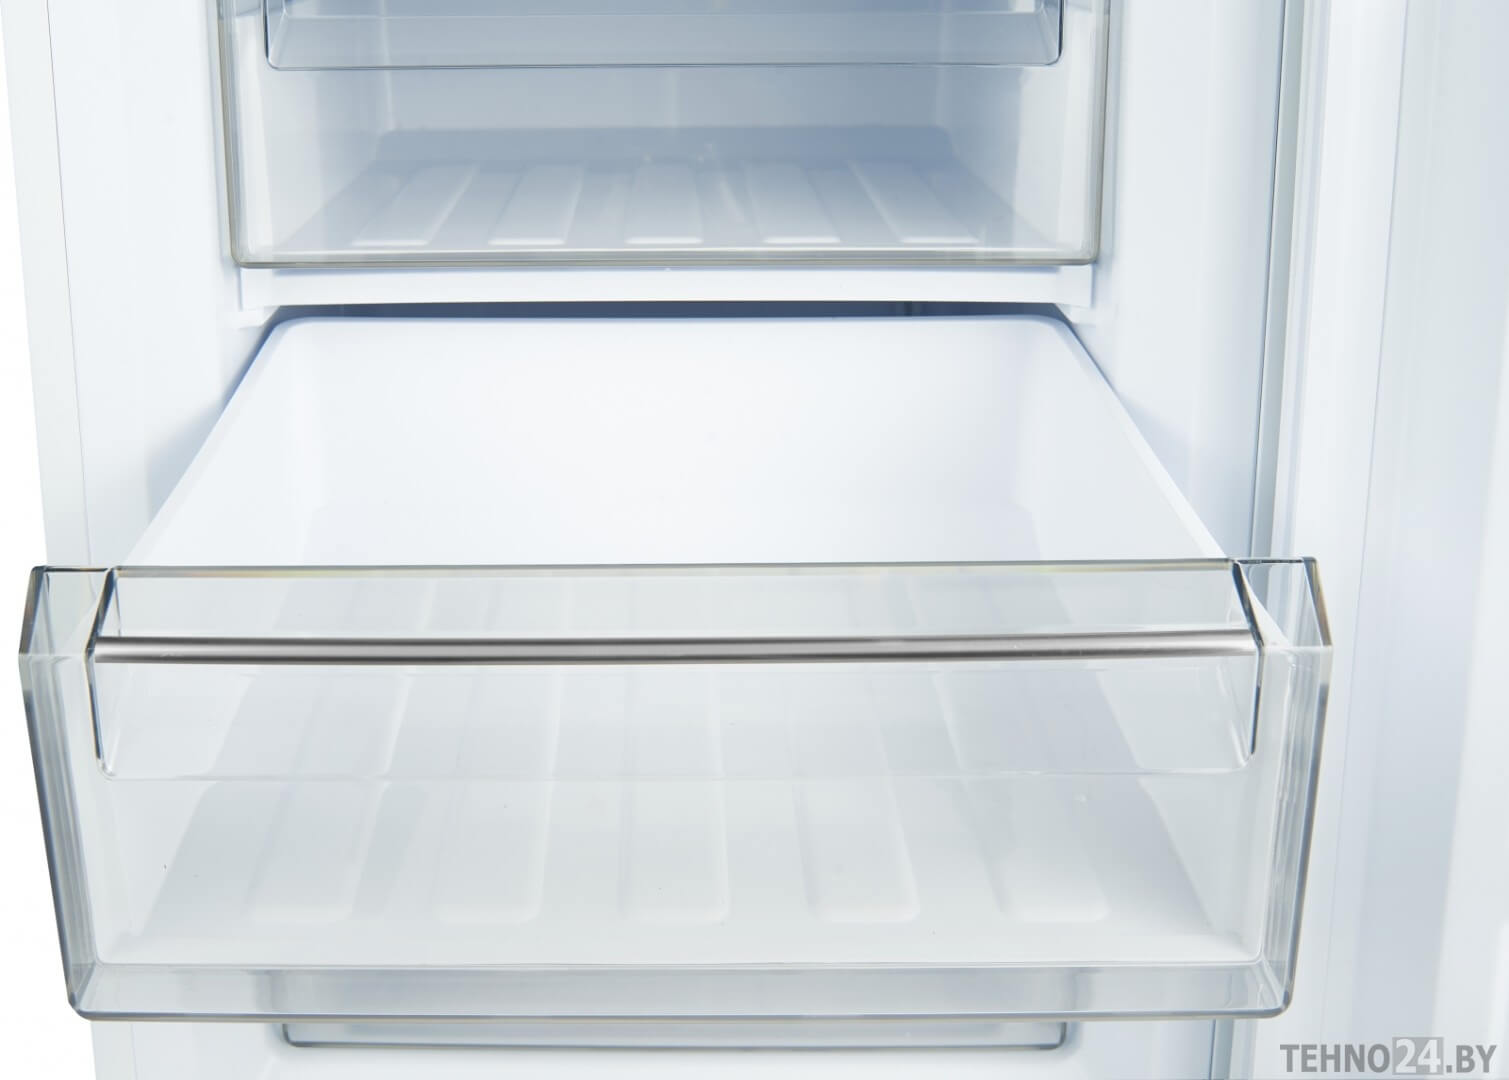 Фото Встраиваемый холодильник WRKI 2801MD (серии)